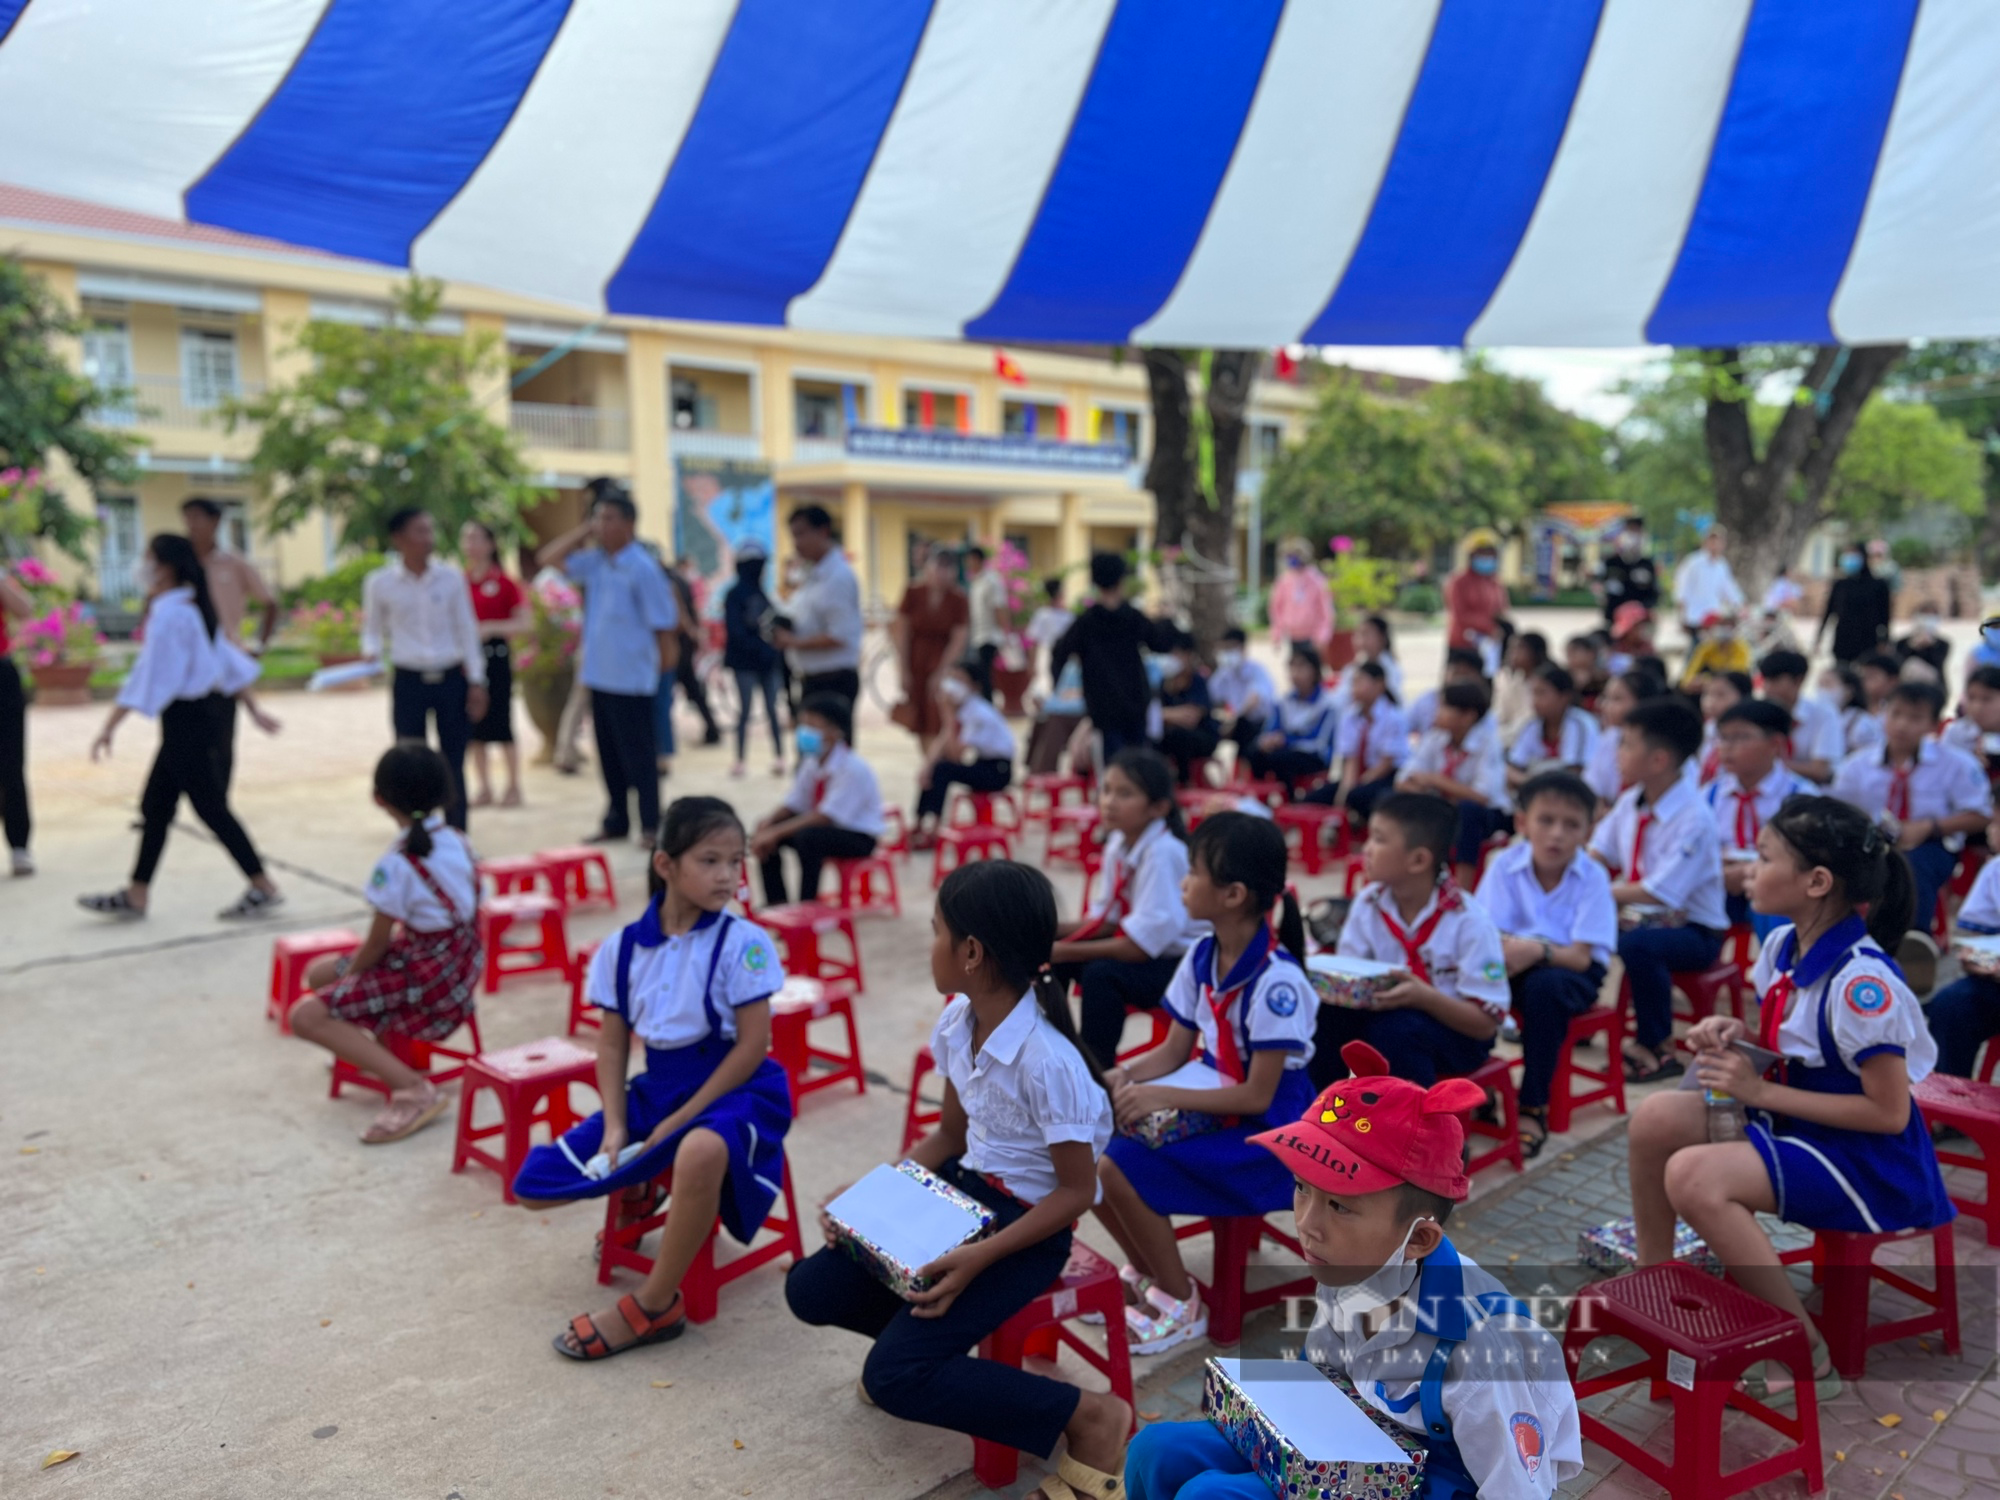 Báo Dân Việt trao học bổng, xe đạp cho học sinh nghèo vượt khó tại Bình Định - Ảnh 2.